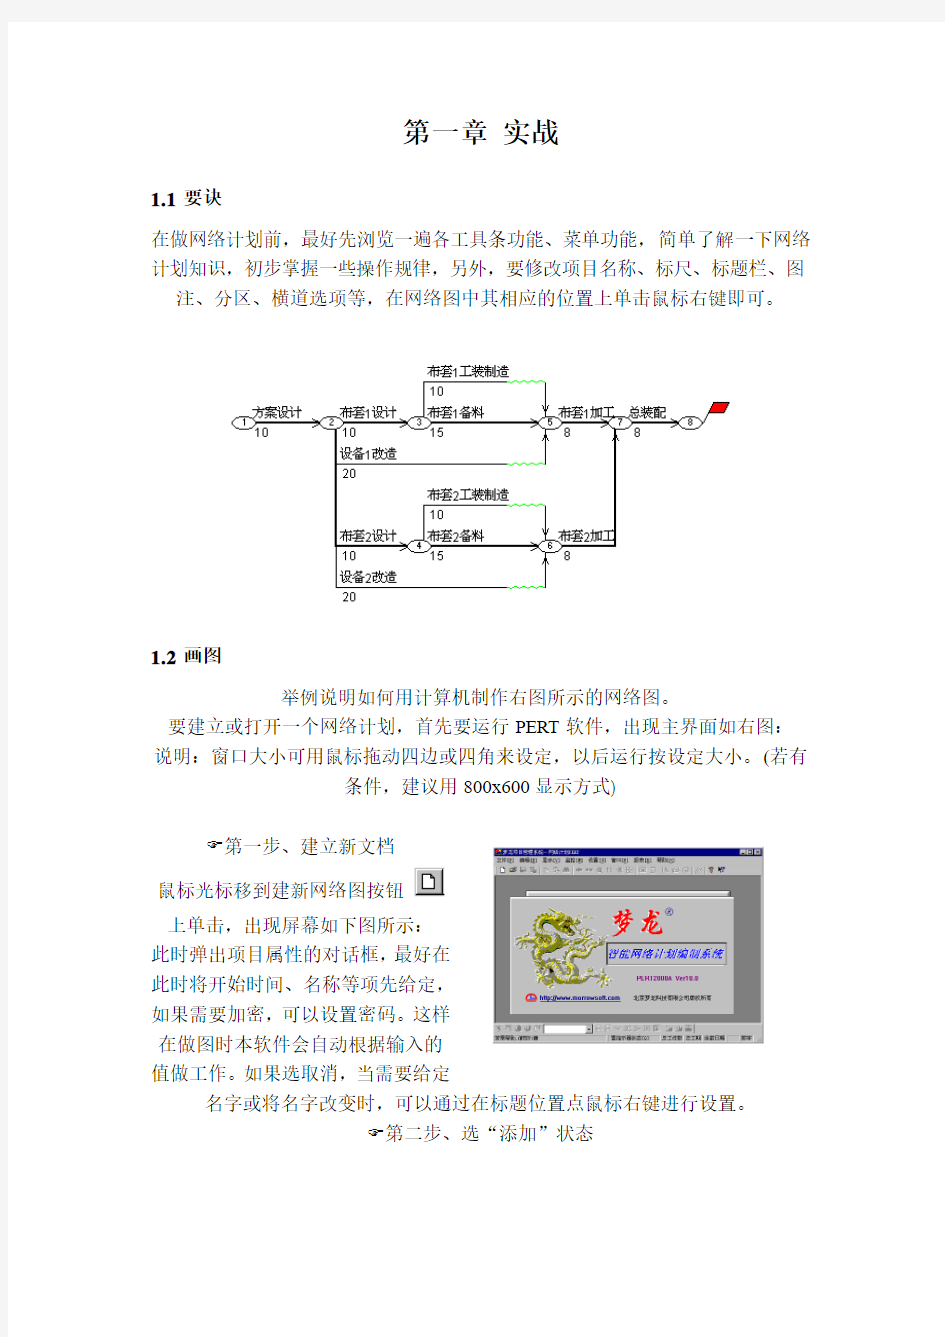 梦龙99A项目管理系统使用说明